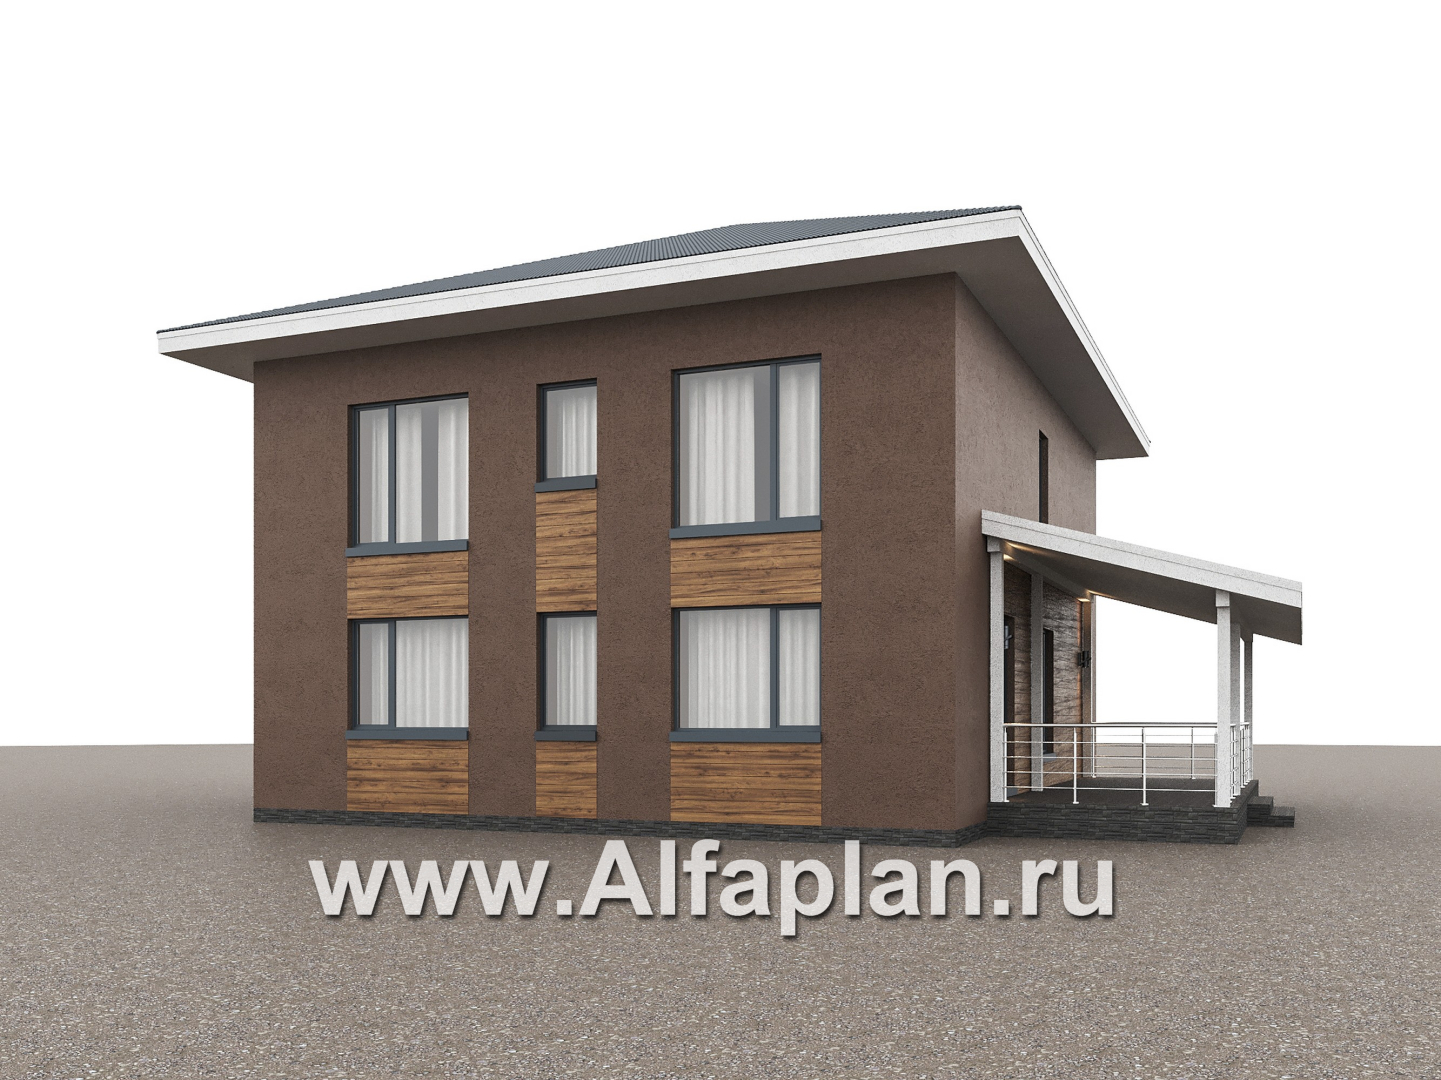 Проекты домов Альфаплан - "Чистая линия"  - проект дома, 2 этажа, с двусветной гостиной, с террасой, в современном стиле - дополнительное изображение №3